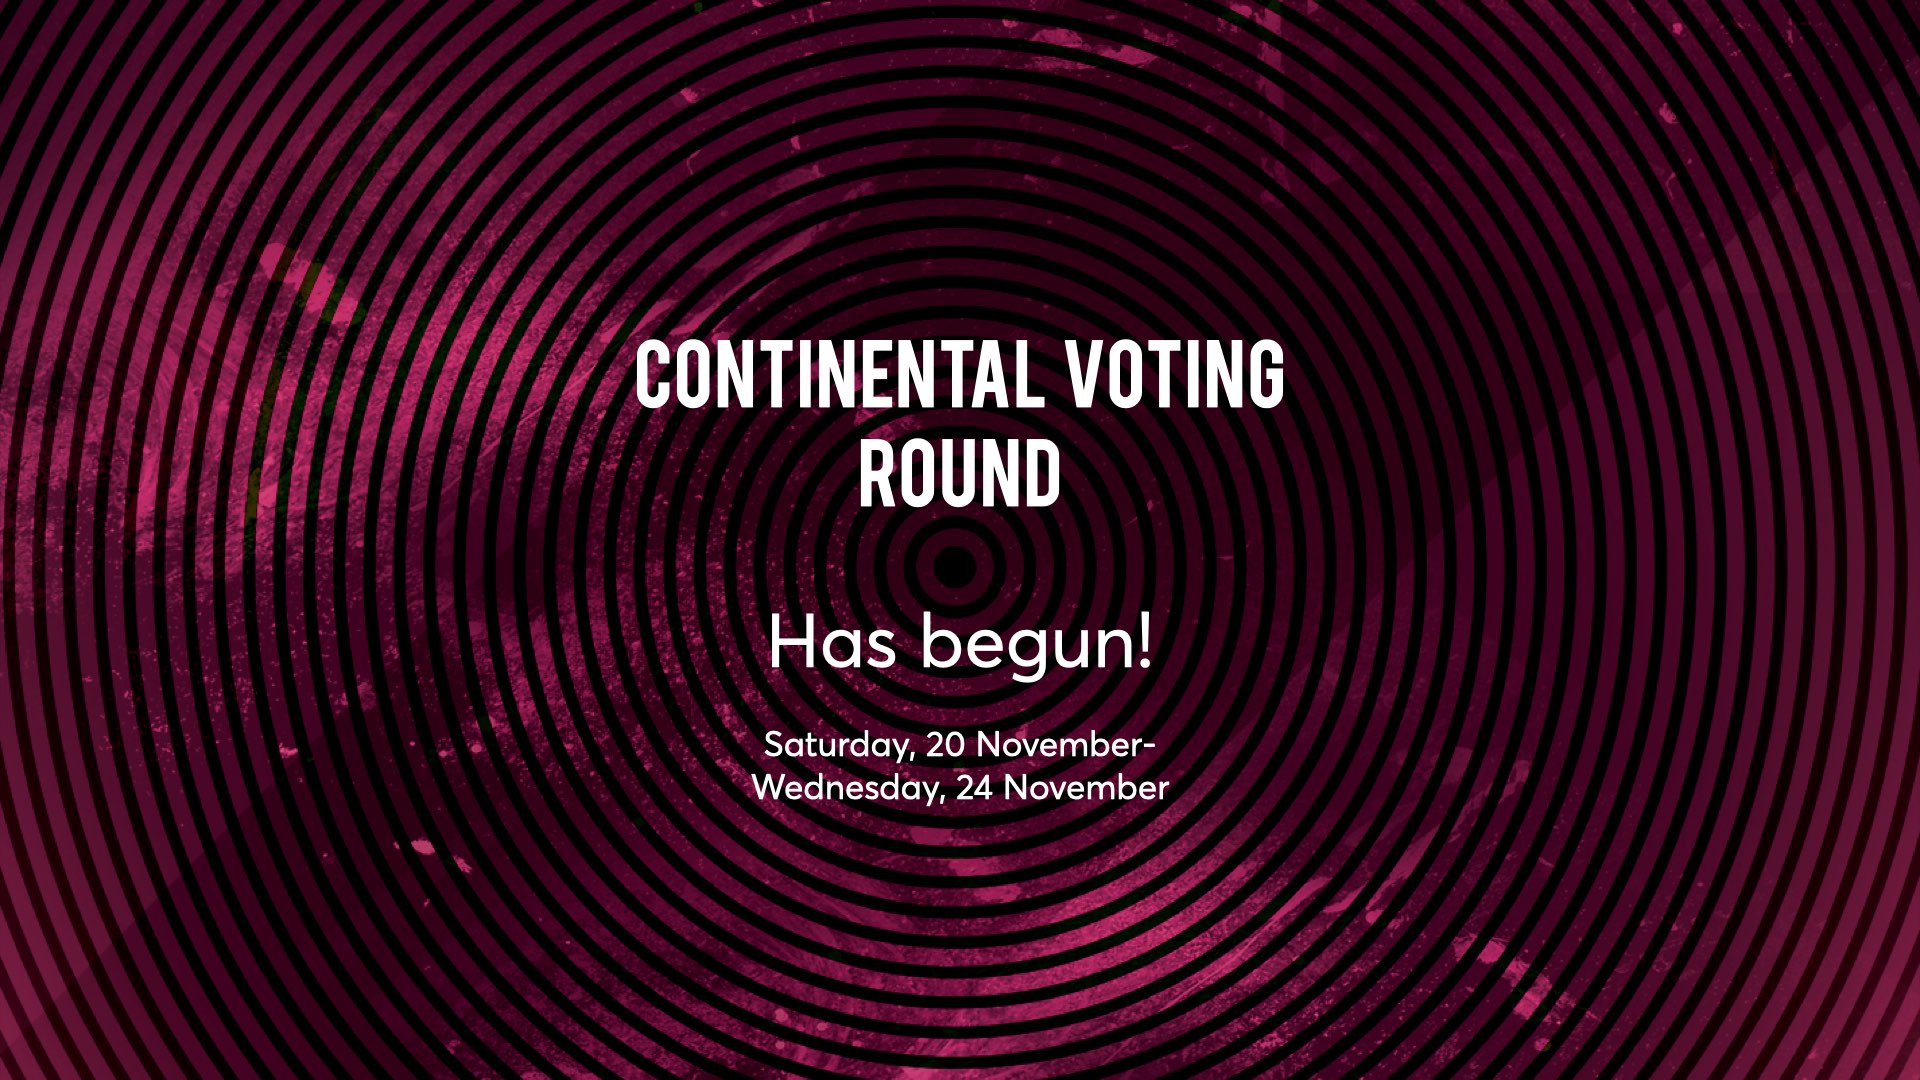 Continental Voting Round has begun!